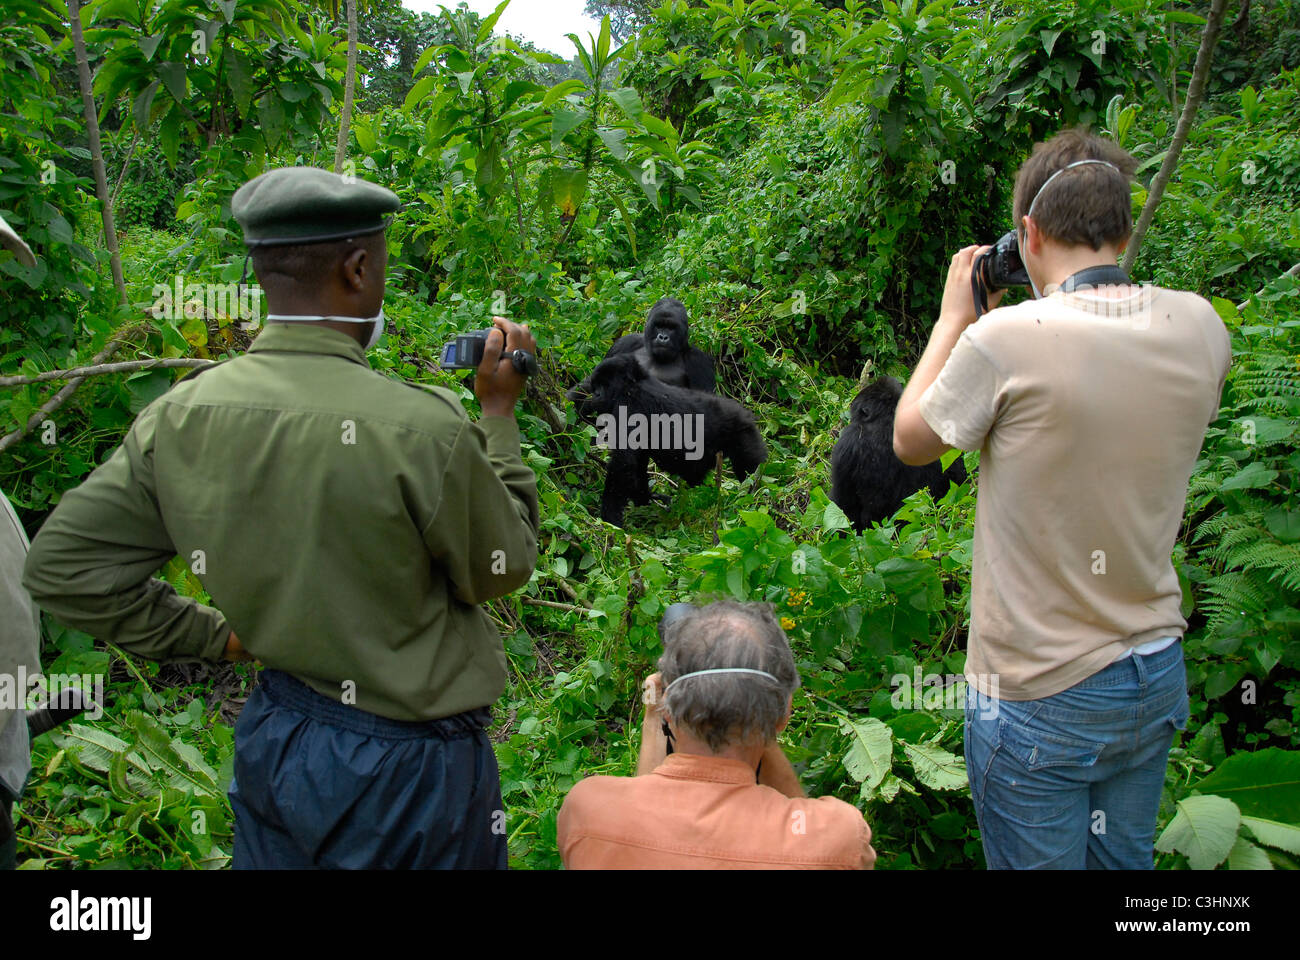 Photographier les gorilles à Buhimo dans le parc national des Virunga, en République démocratique du Congo. Humba Silverback, avec sa famille Banque D'Images